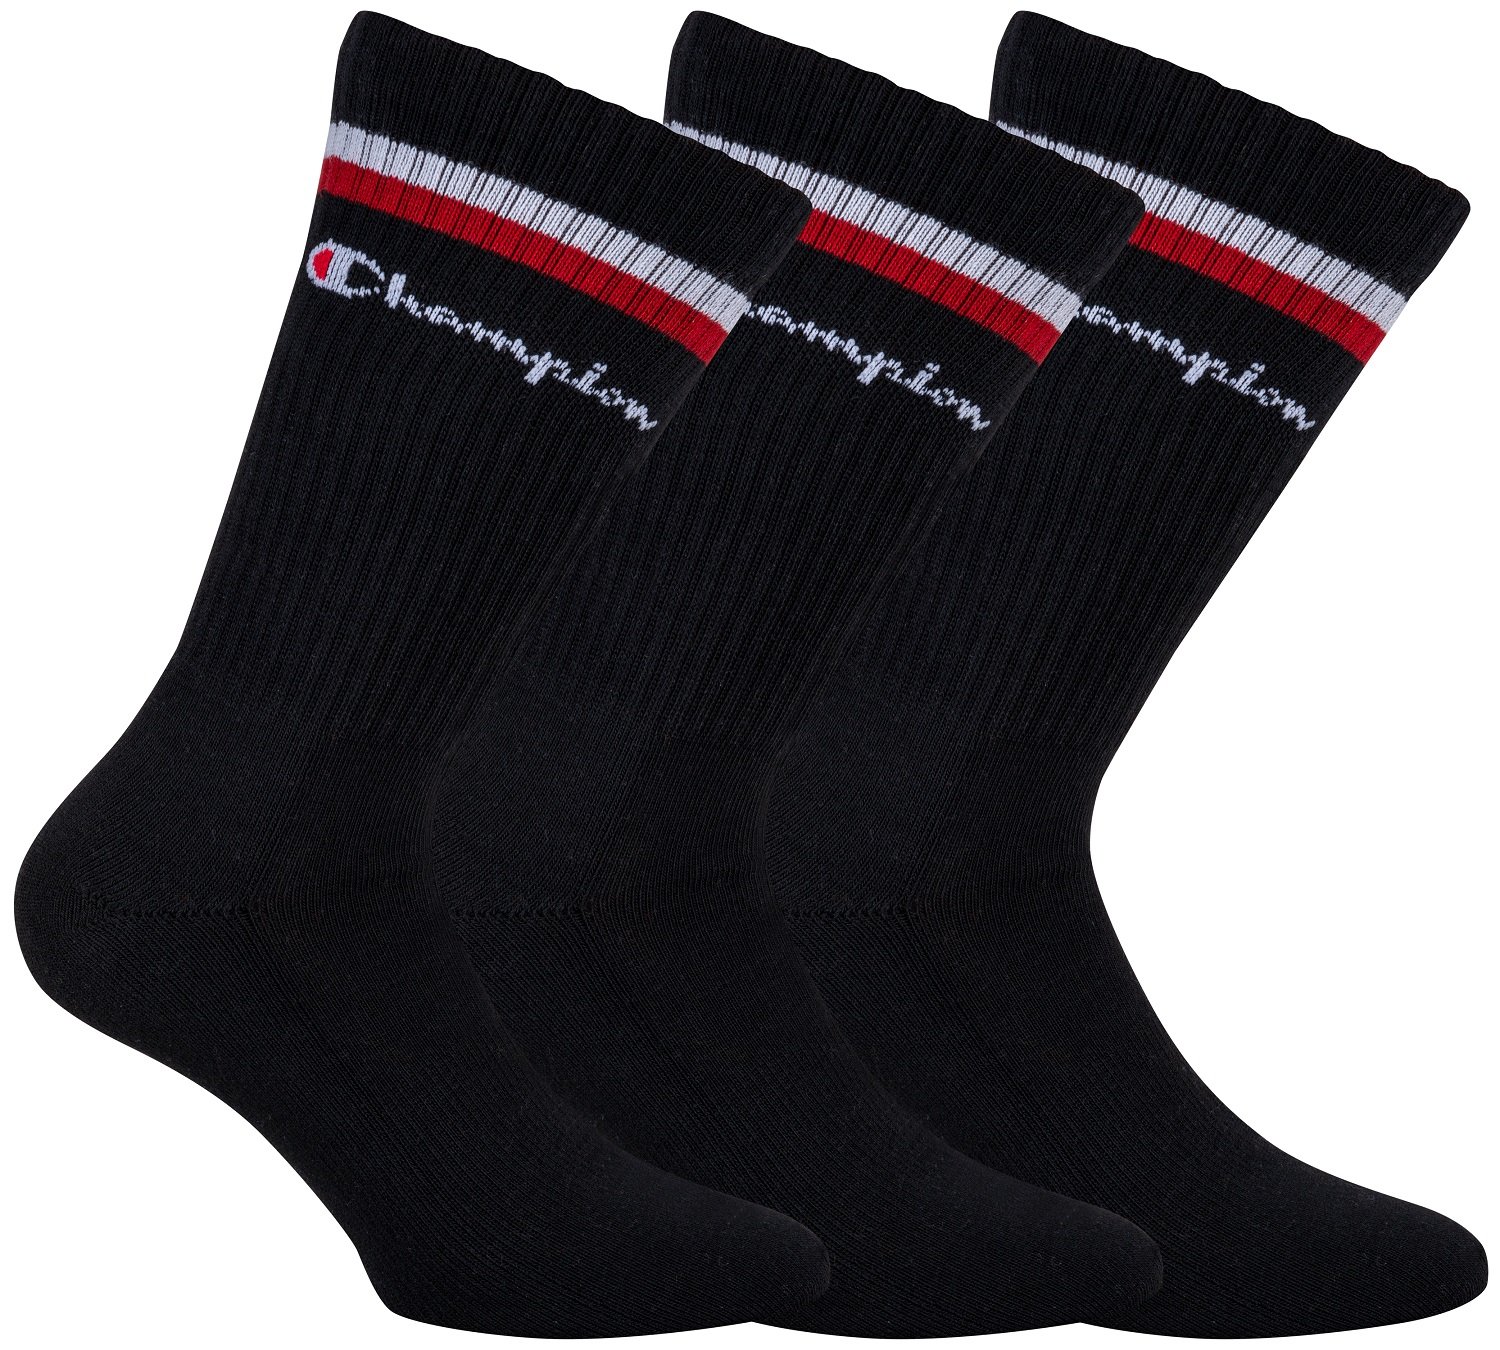 Fotografie CHAMPION CREW SOCKS FASHION STRIPES 3x - Sportovní ponožky 3 páry - černá - bílá - červená